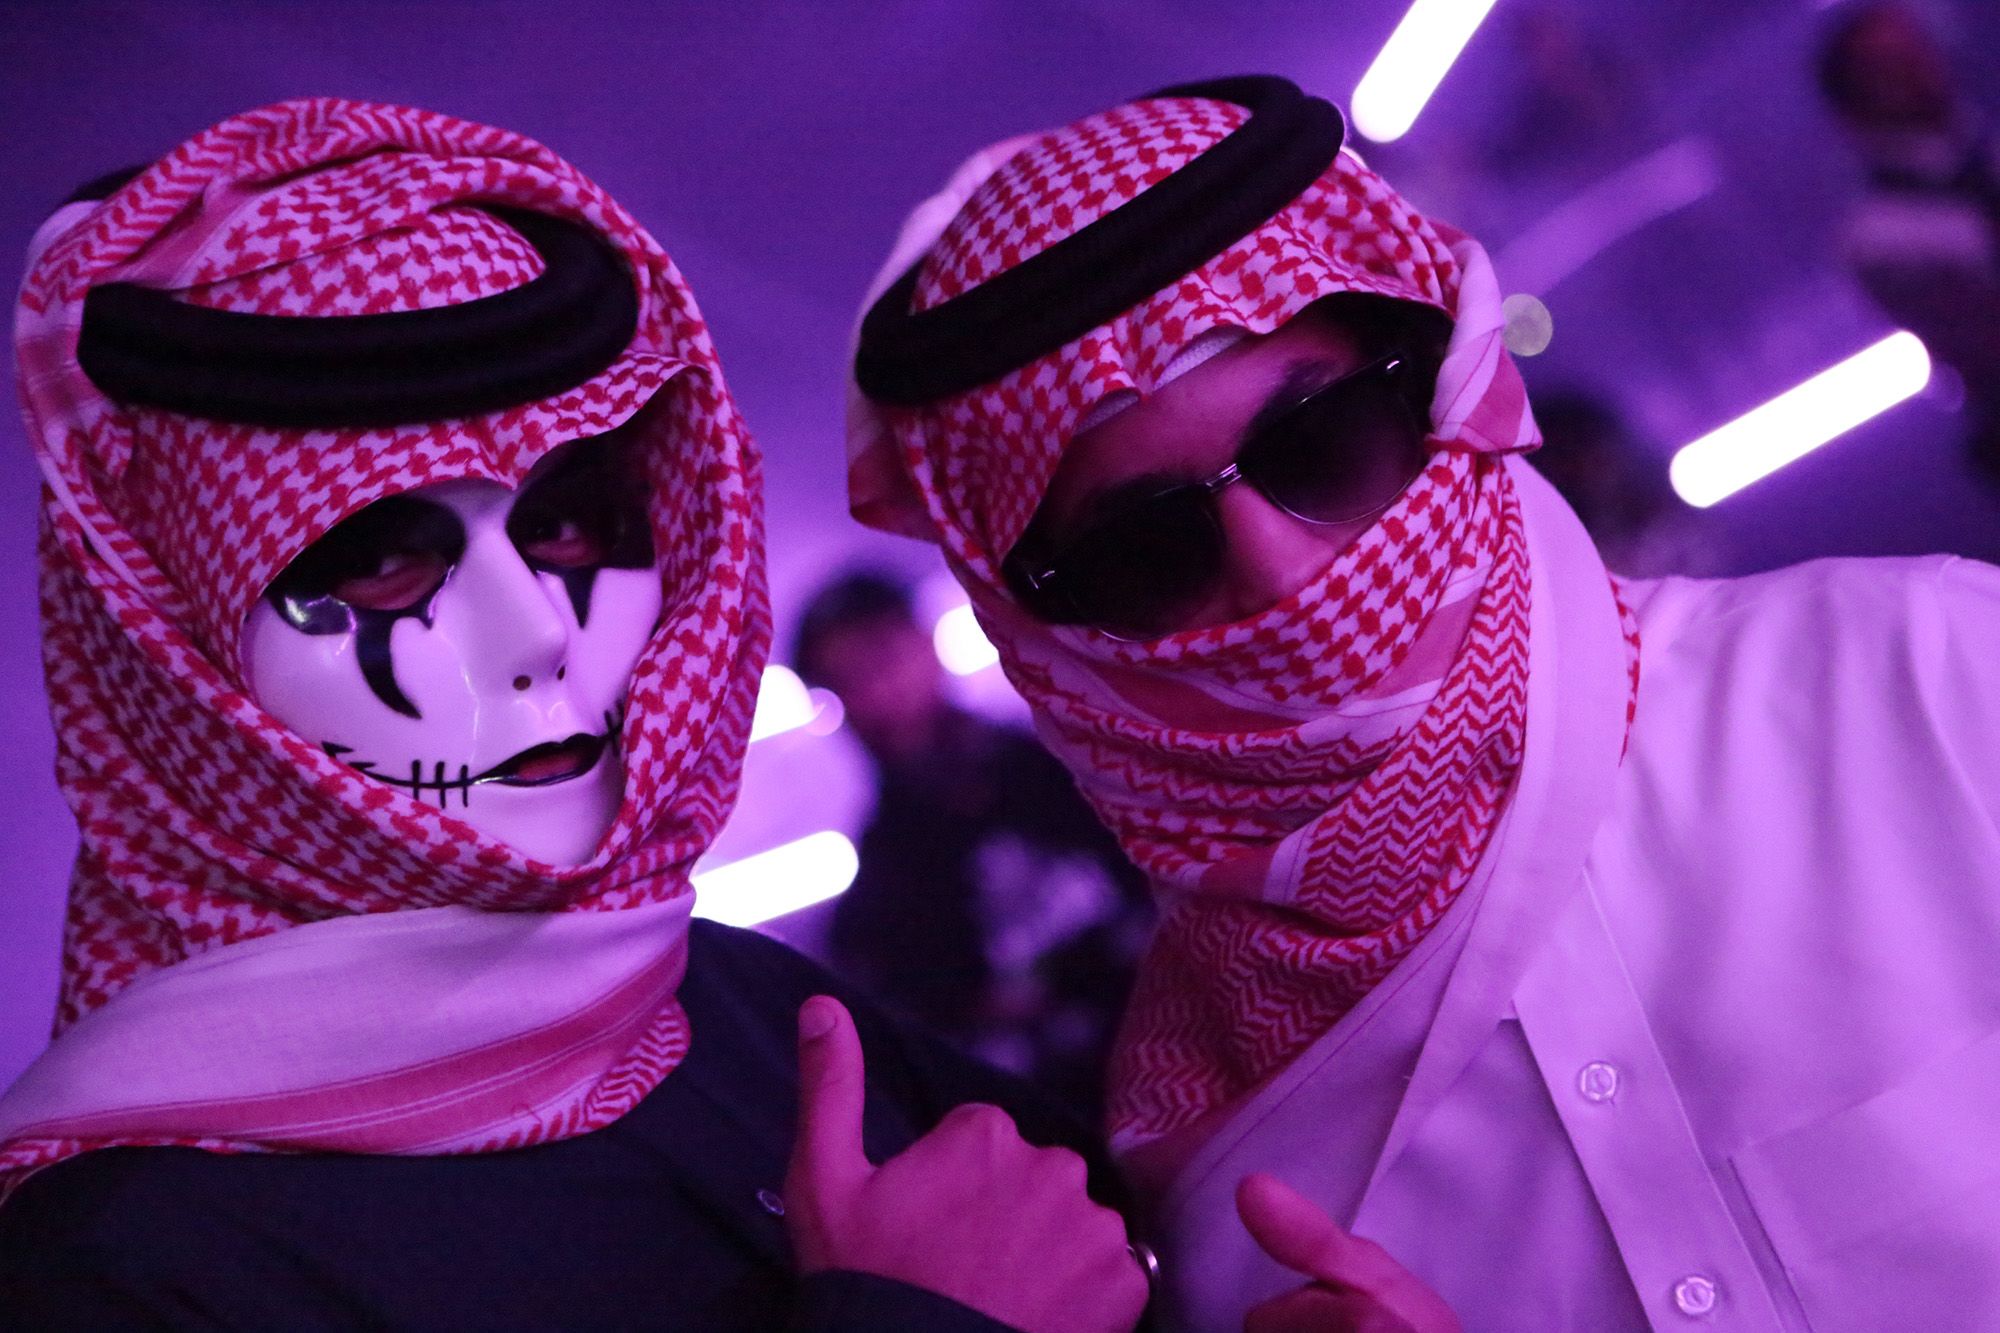 Saudi Arab Blue Film Xxx - Why Saudi Arabia is hosting one of the world's biggest raves | CNN